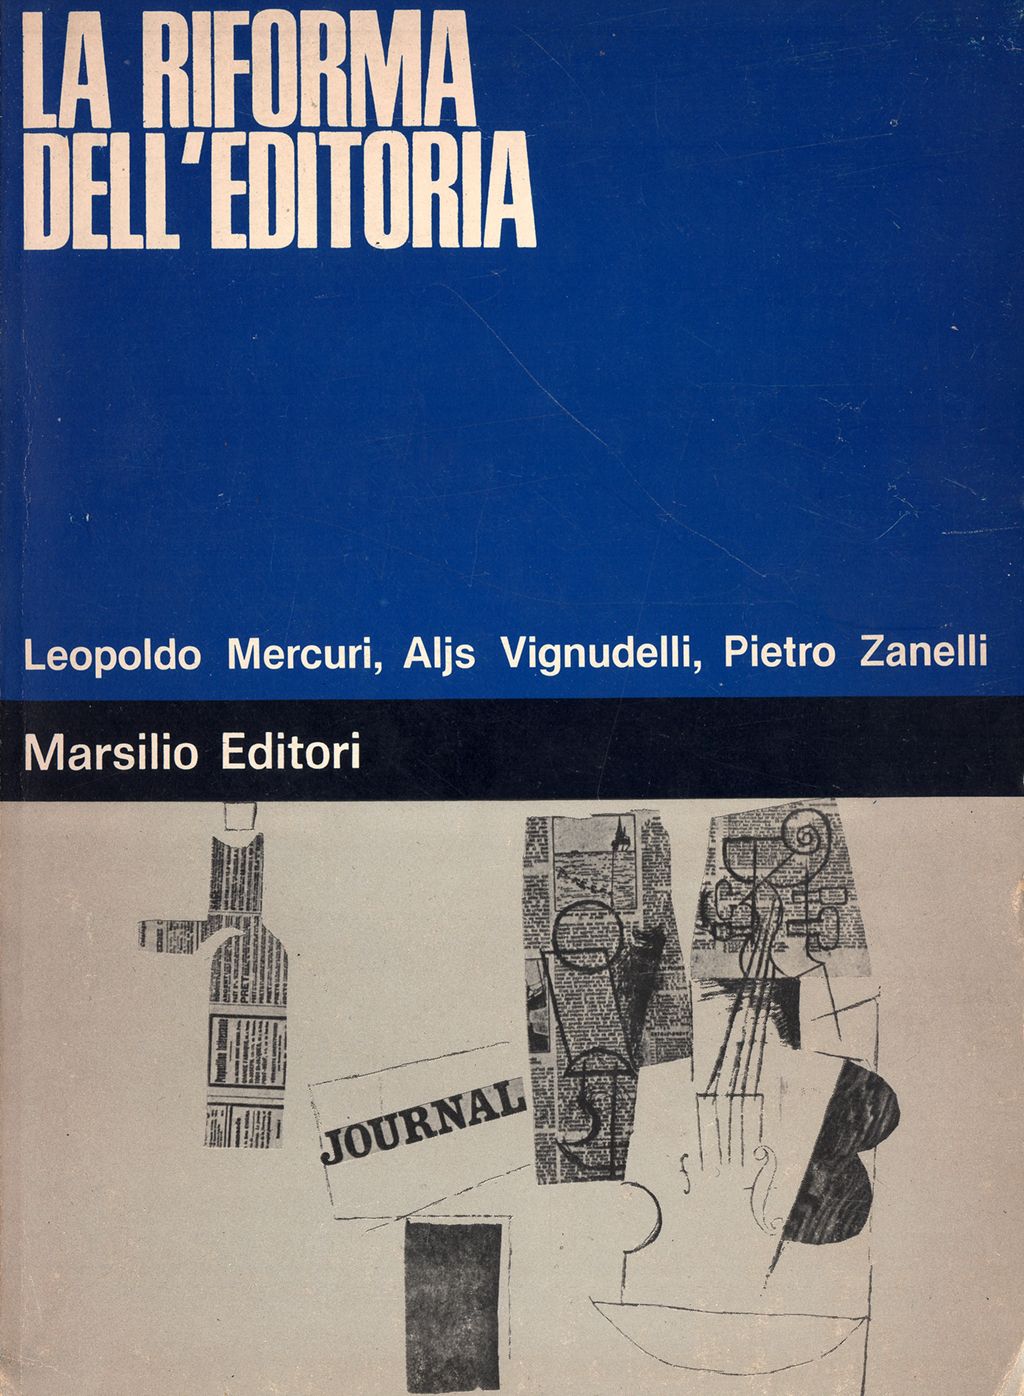 Leopoldo Mercuri, Aljs Vignudelli, Pietro Zanelli - La riforma dell'editoria